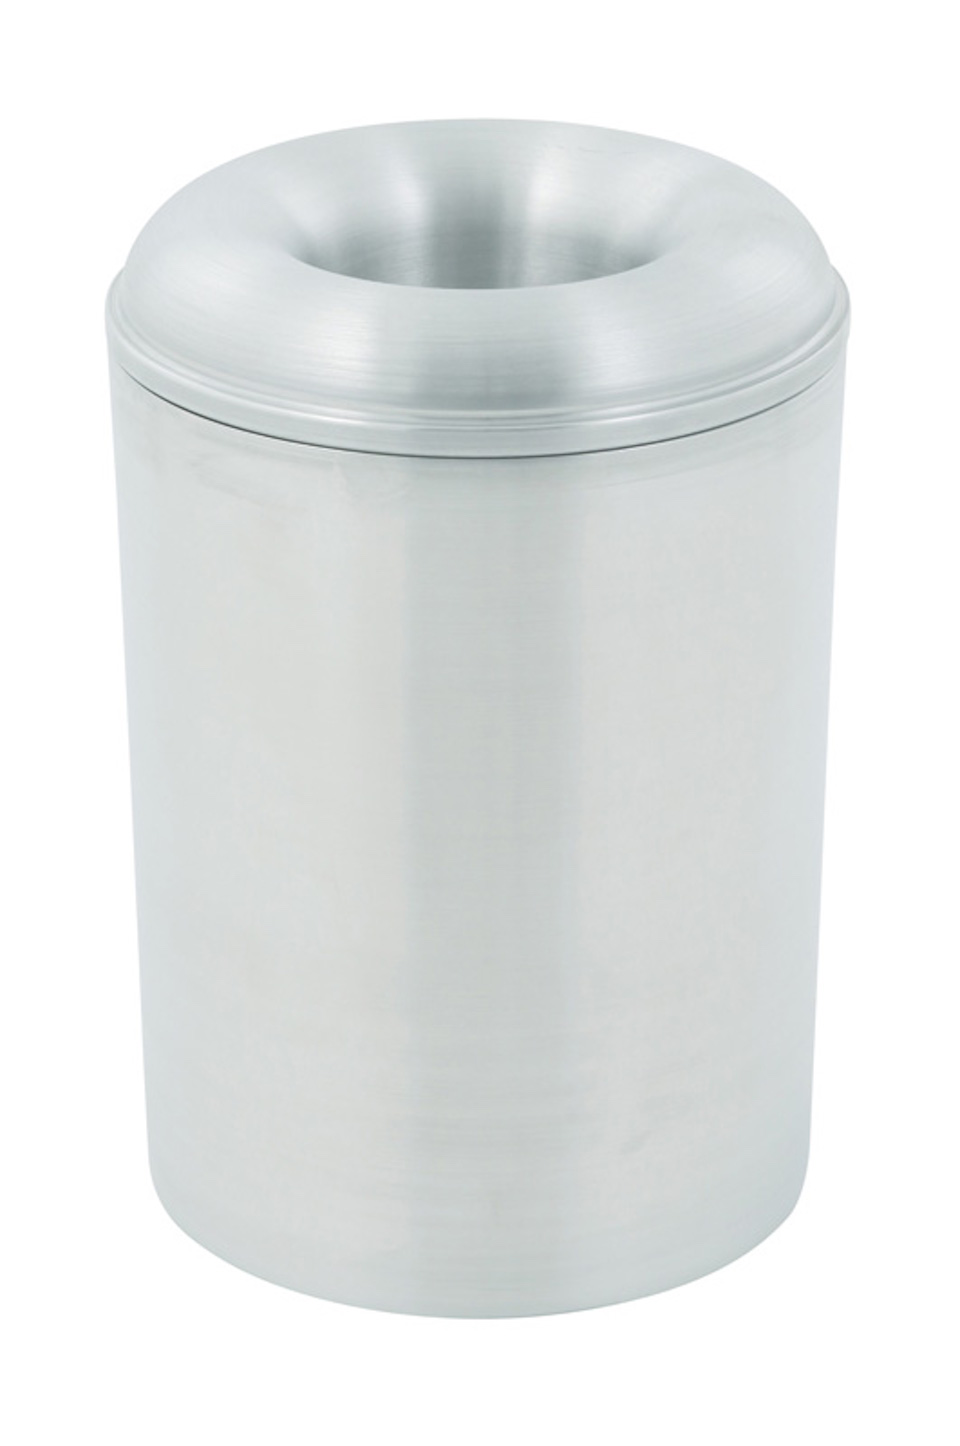 Selbstlöschender Papierkorb & Abfallsammler aus Aluminium | 13 Liter, HxØ 30,2x26cm | Silber